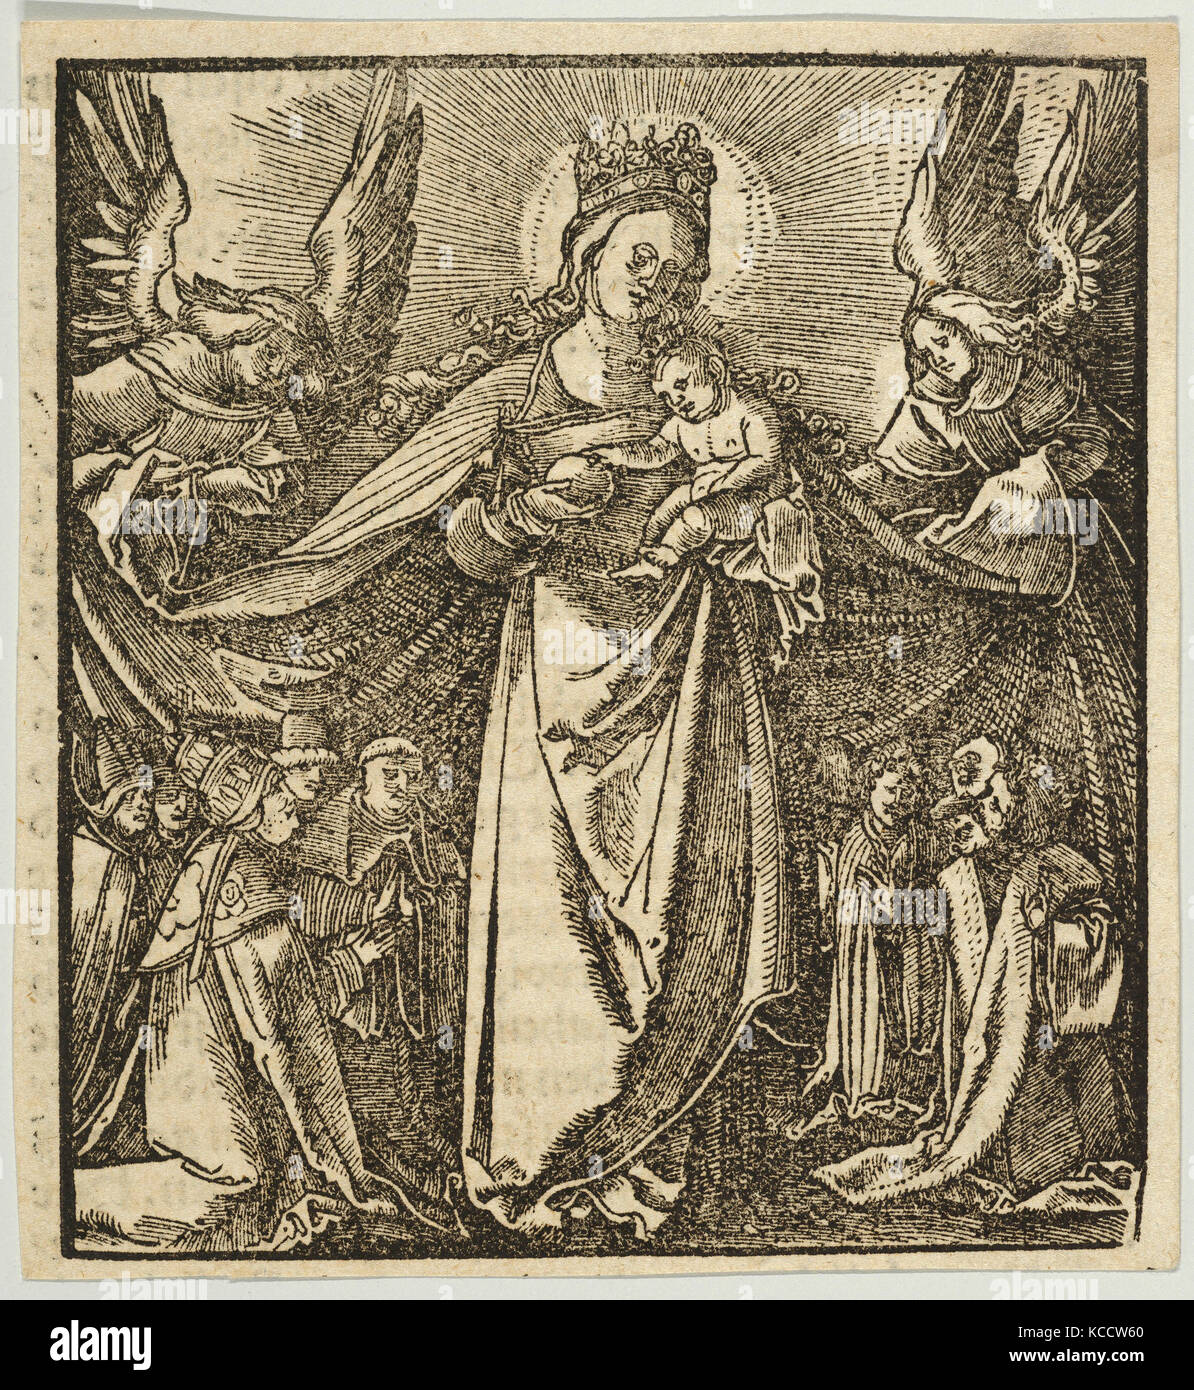 Disegni e stampe, stampa, la Madonna della Misericordia, da Hymmelwagen auff dem, wol wer lebt..., Hans Schäufelein Foto Stock